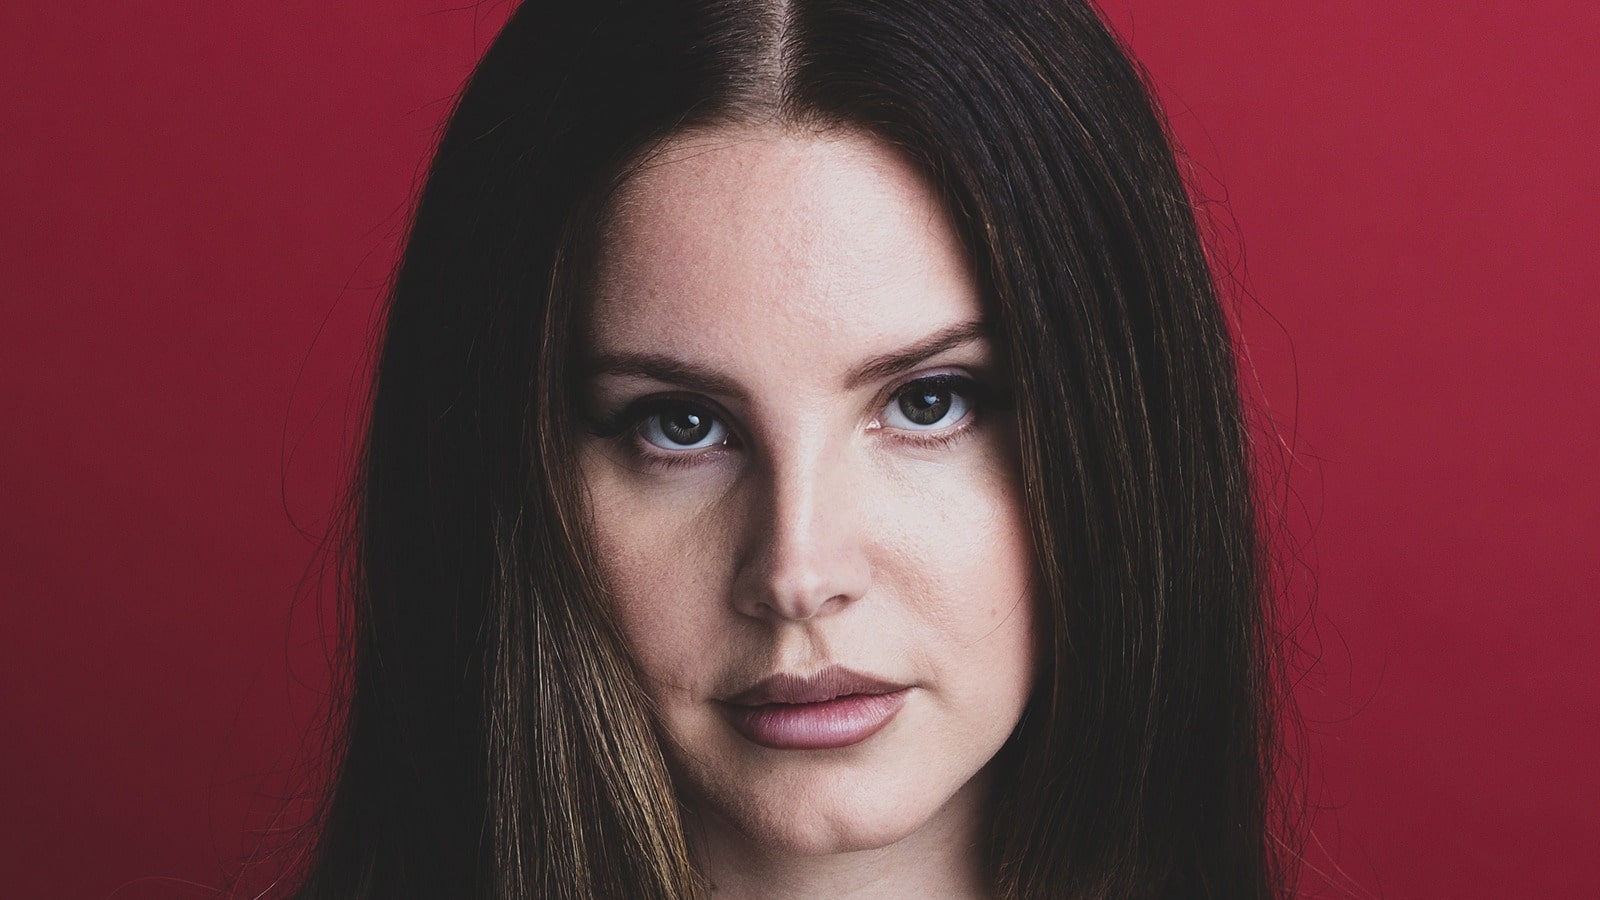 Découvrez notre classement des meilleurs albums de Lana Del Rey